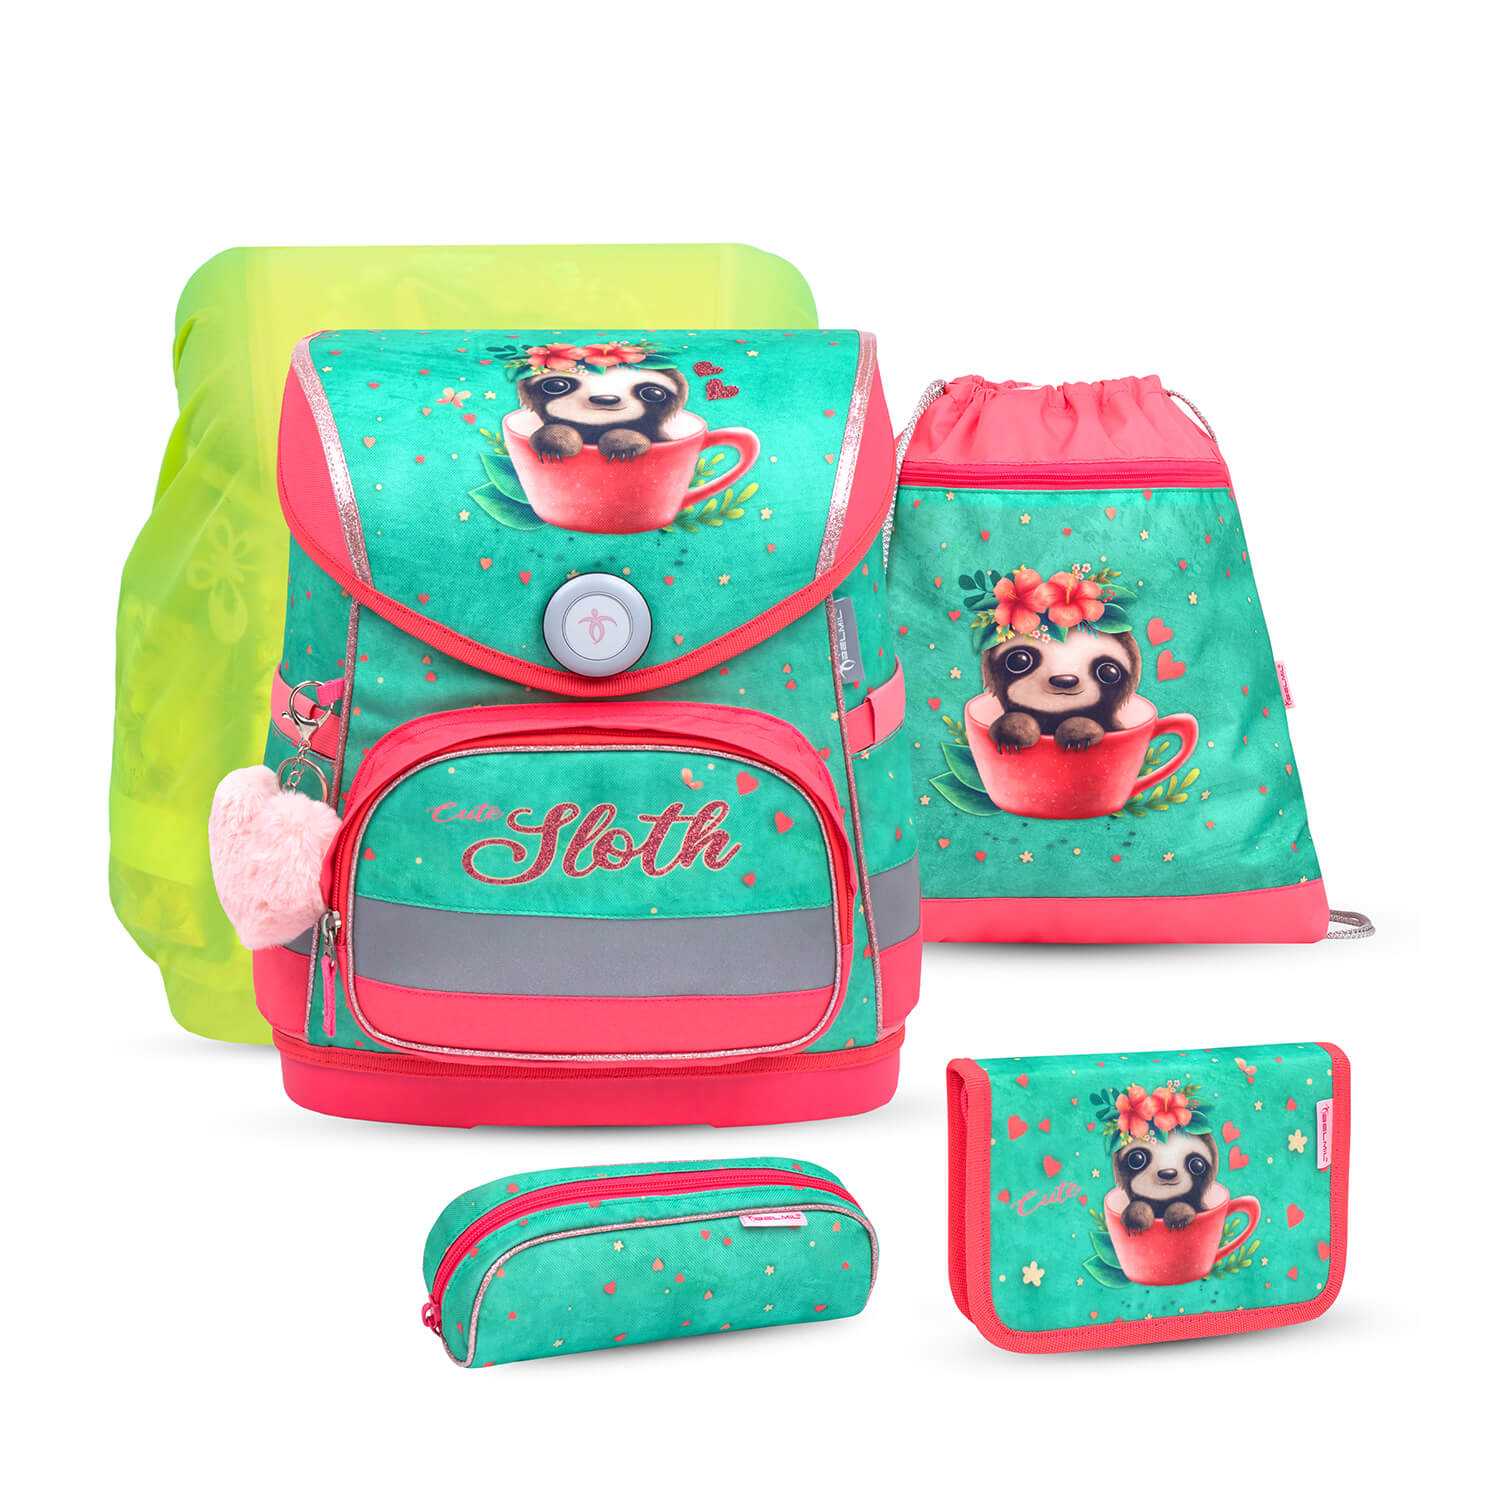 Compact Cute Sloth schoolbag set 5 pcs